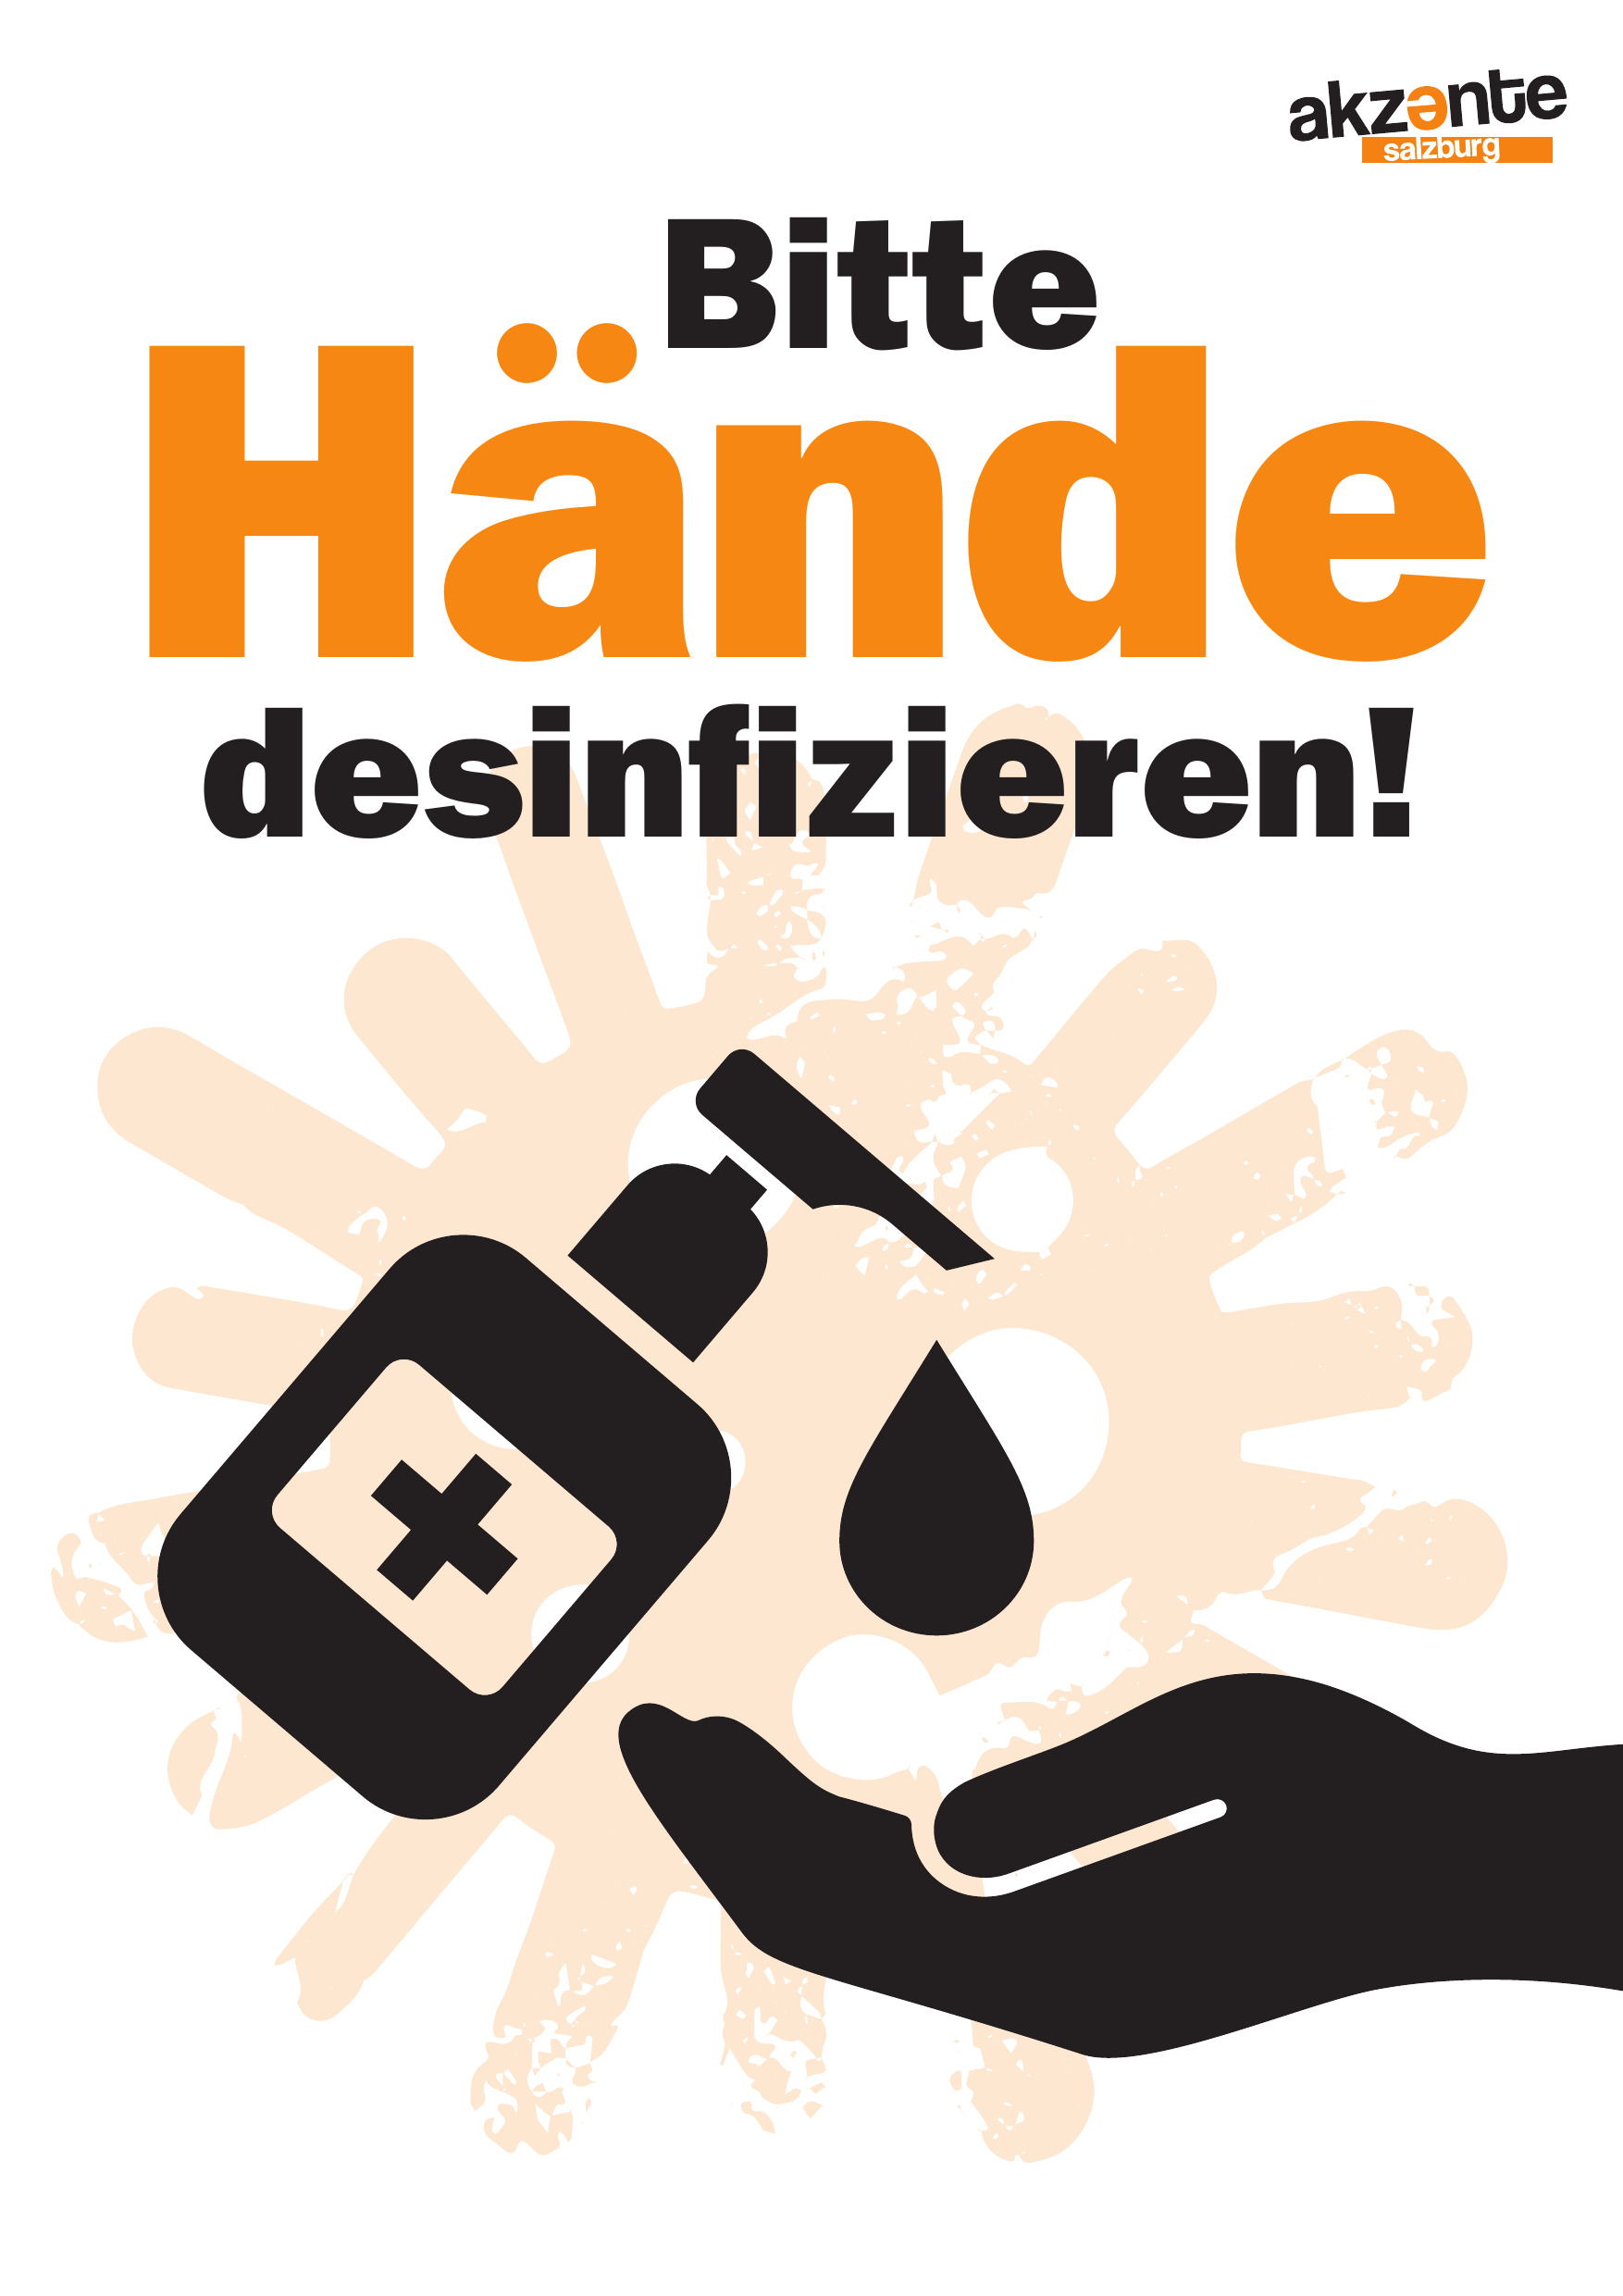 Hände waschen Symbol mit Schrift "Bitte Hände desinfizieren"